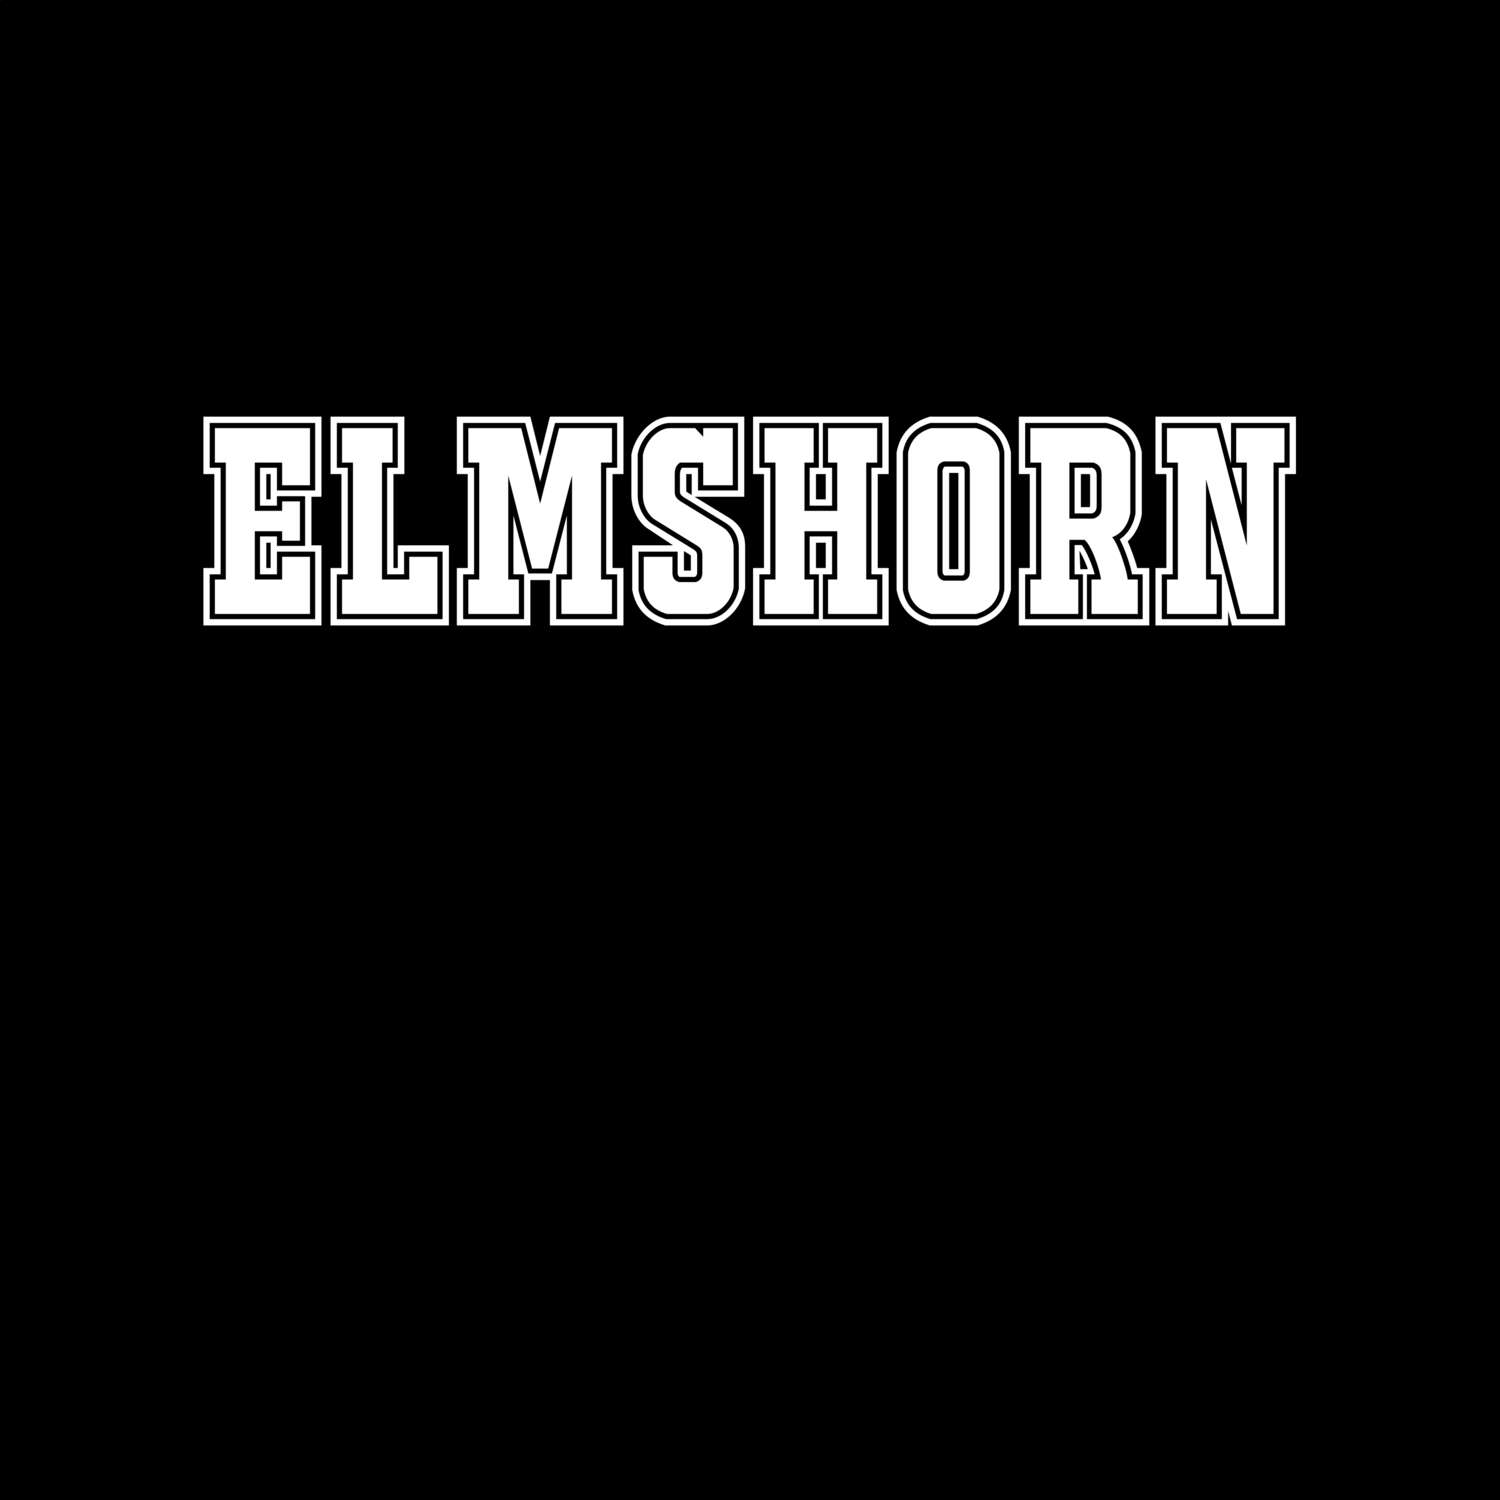 Elmshorn T-Shirt »Classic«